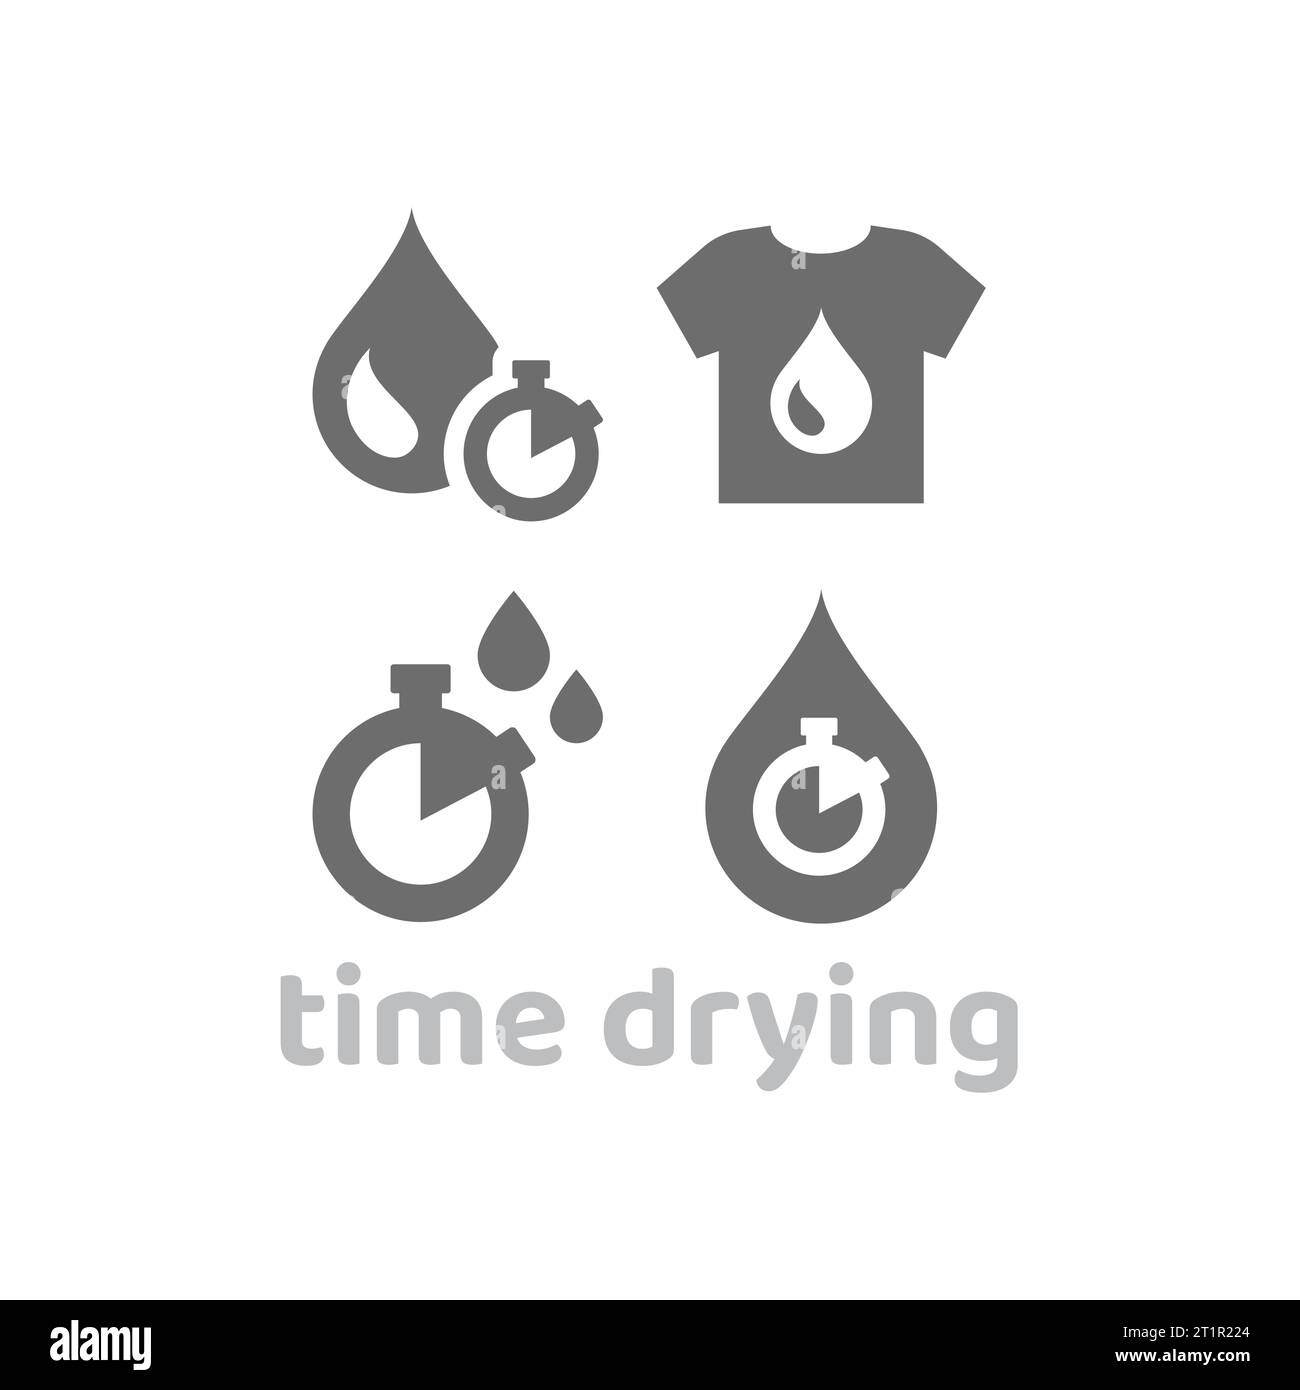 Tempo di asciugatura, set di icone del vettore della macchina dell'essiccatore. Tessuti o abiti ad asciugatura rapida con icone dell'orologio. Illustrazione Vettoriale